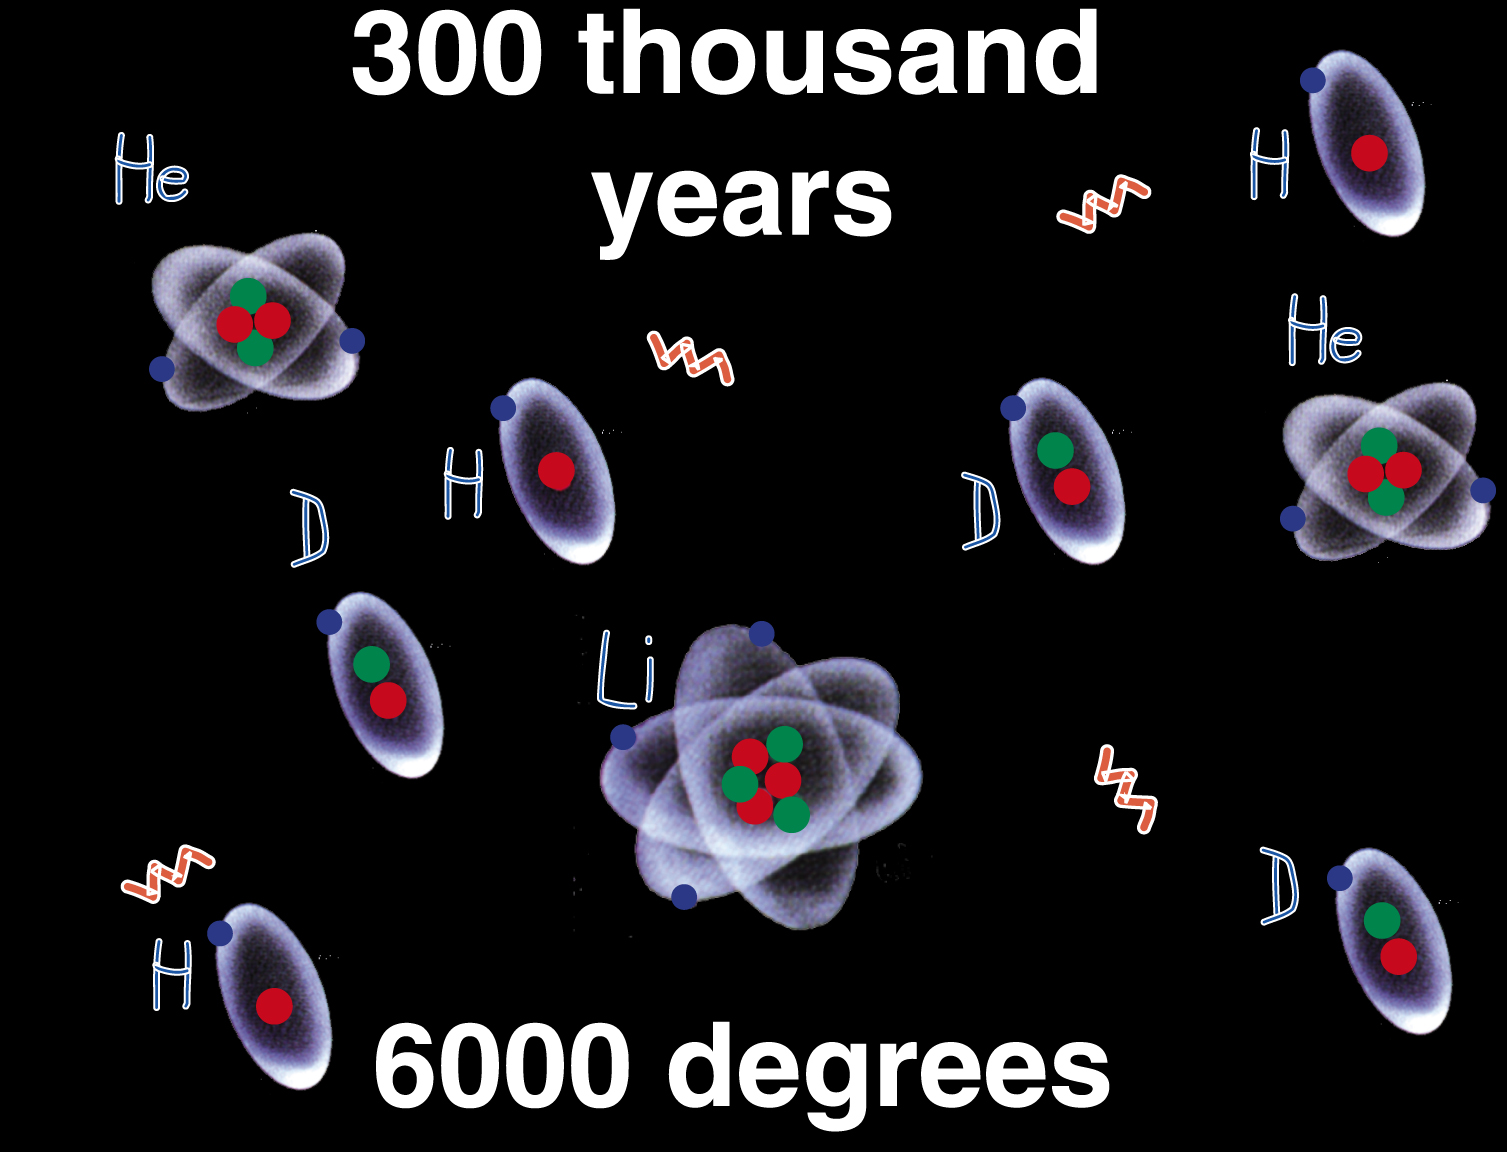 Big Bang (3) zbyt mało energii na pozytrony znikają powstają lekkie jądra - Nukleosynteza elektrony związane w atomach